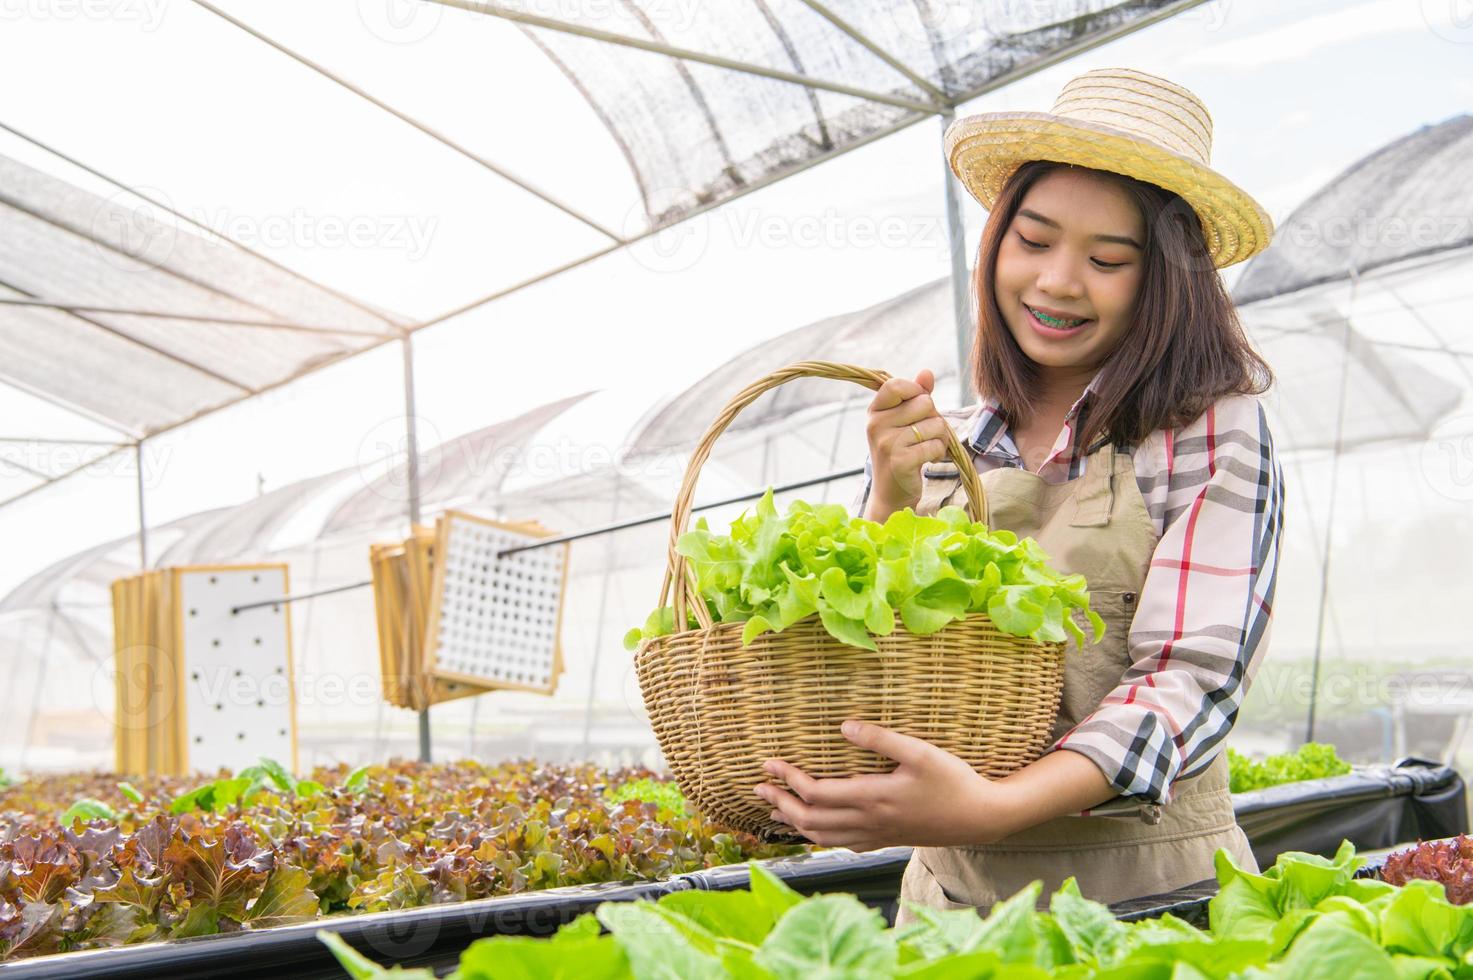 jonge aziatische hydrocultuur biologische boer die groentensalade verzamelt in mand met kwekerijkas. mensen levensstijlen en zaken. indoor landbouw en teeltomgeving tuinman concept foto